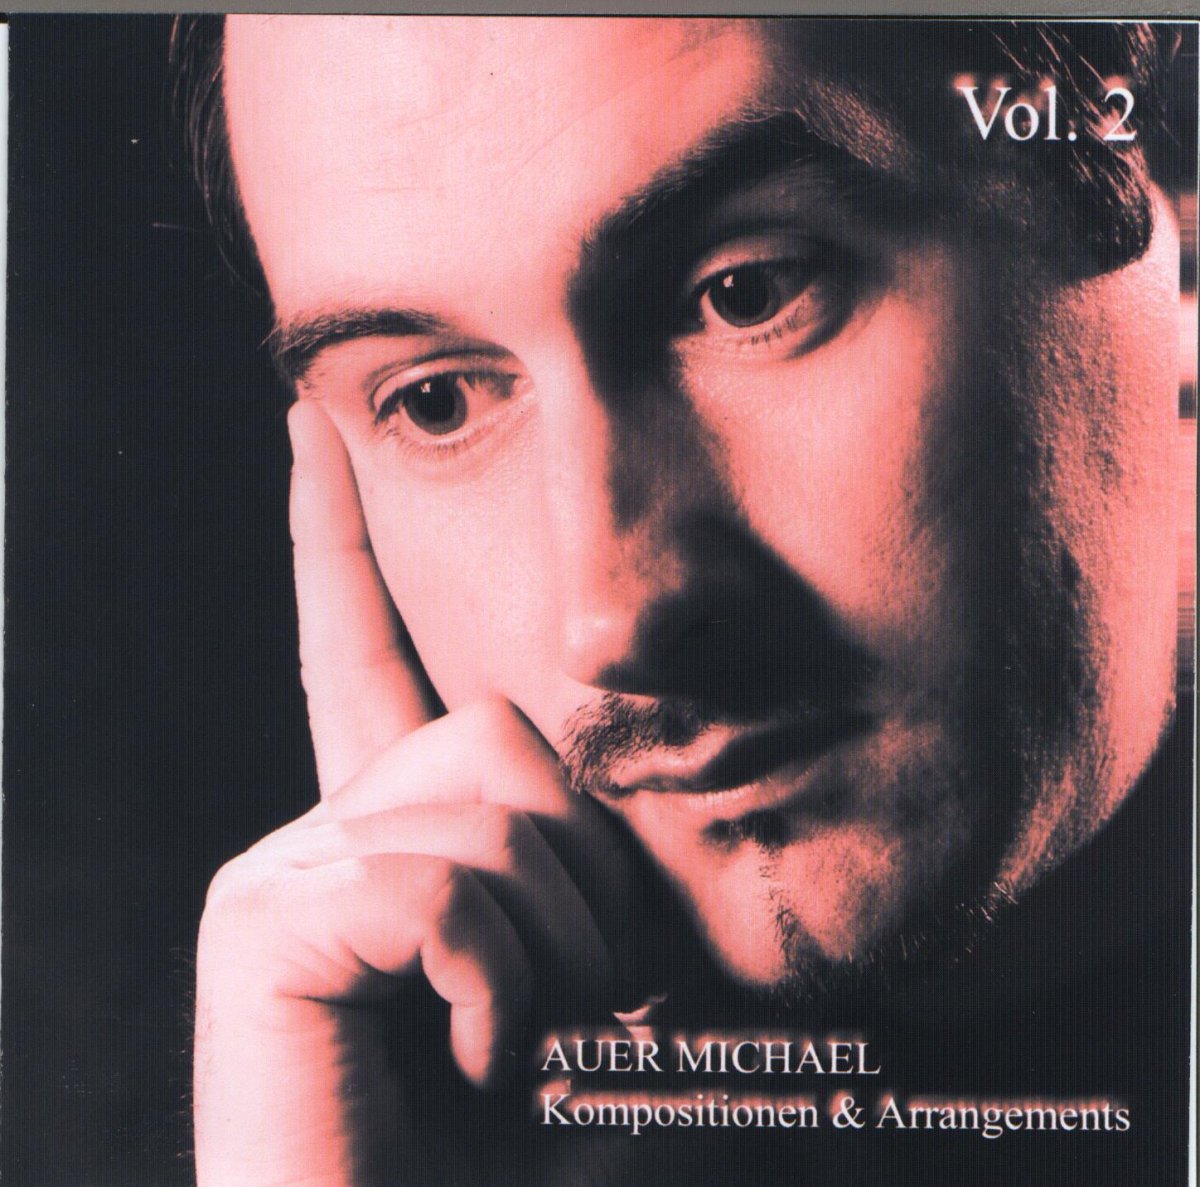 Auer Michael: Kompositionen und Arrangements #2 - click here